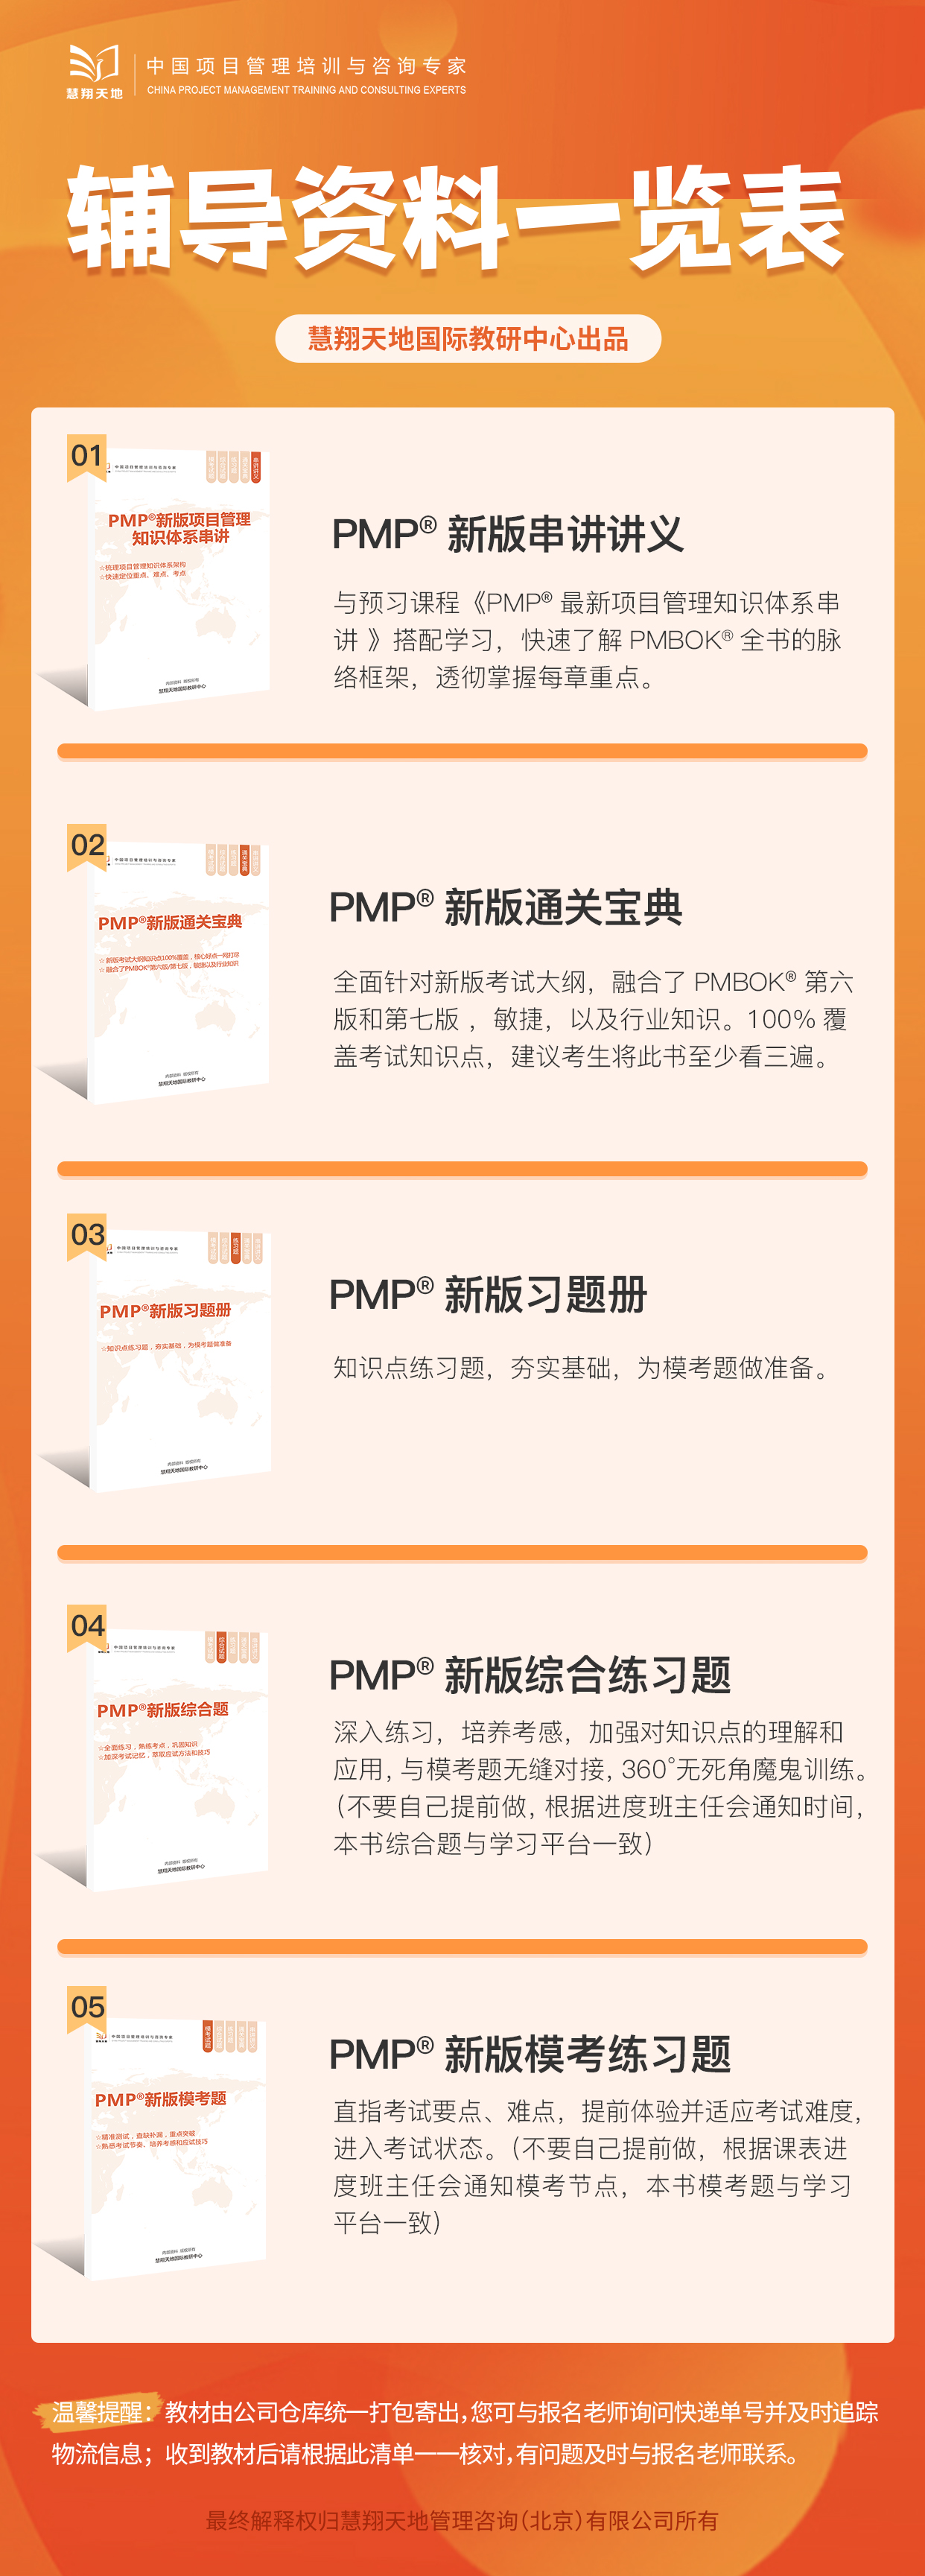 PMP辅导资料一览表.jpg